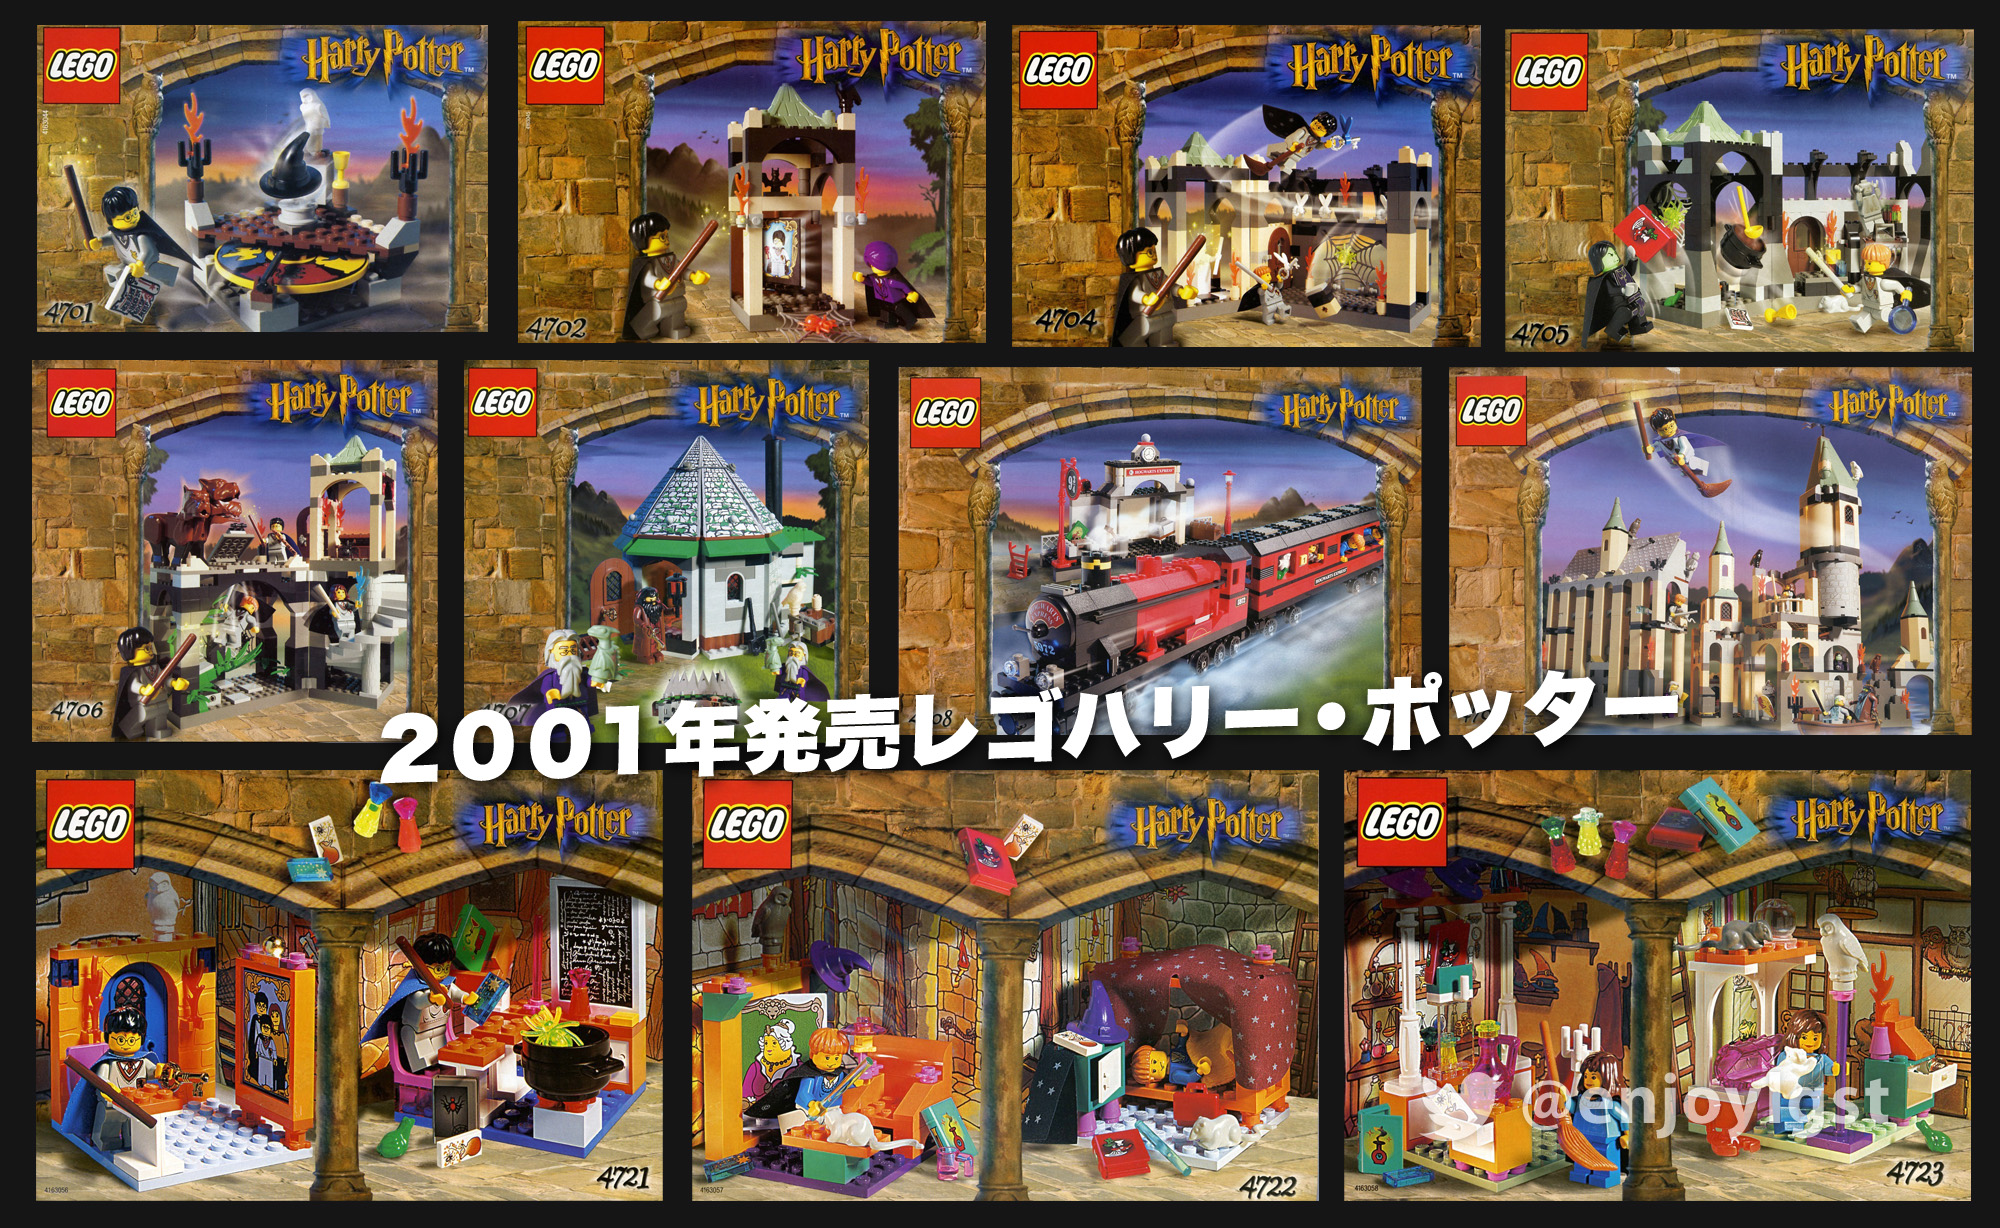 2021年はレゴ(R)ハリー・ポッター発売20周年記念！スペシャルイベントあるかも？